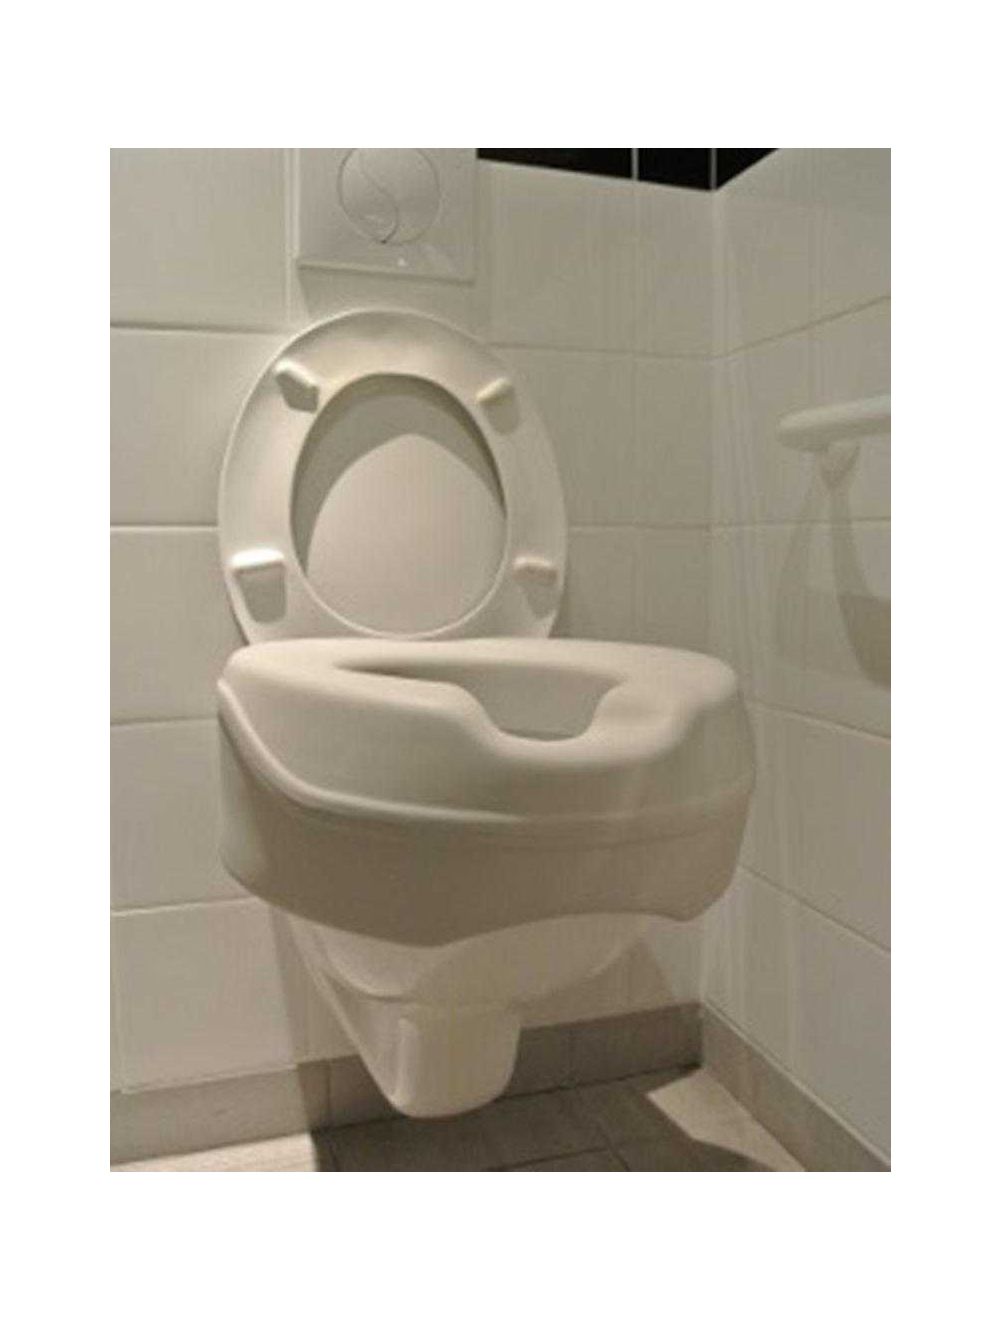 Coussin De Protection Jetable Sur Le Rebord Du Siège Des Toilettes